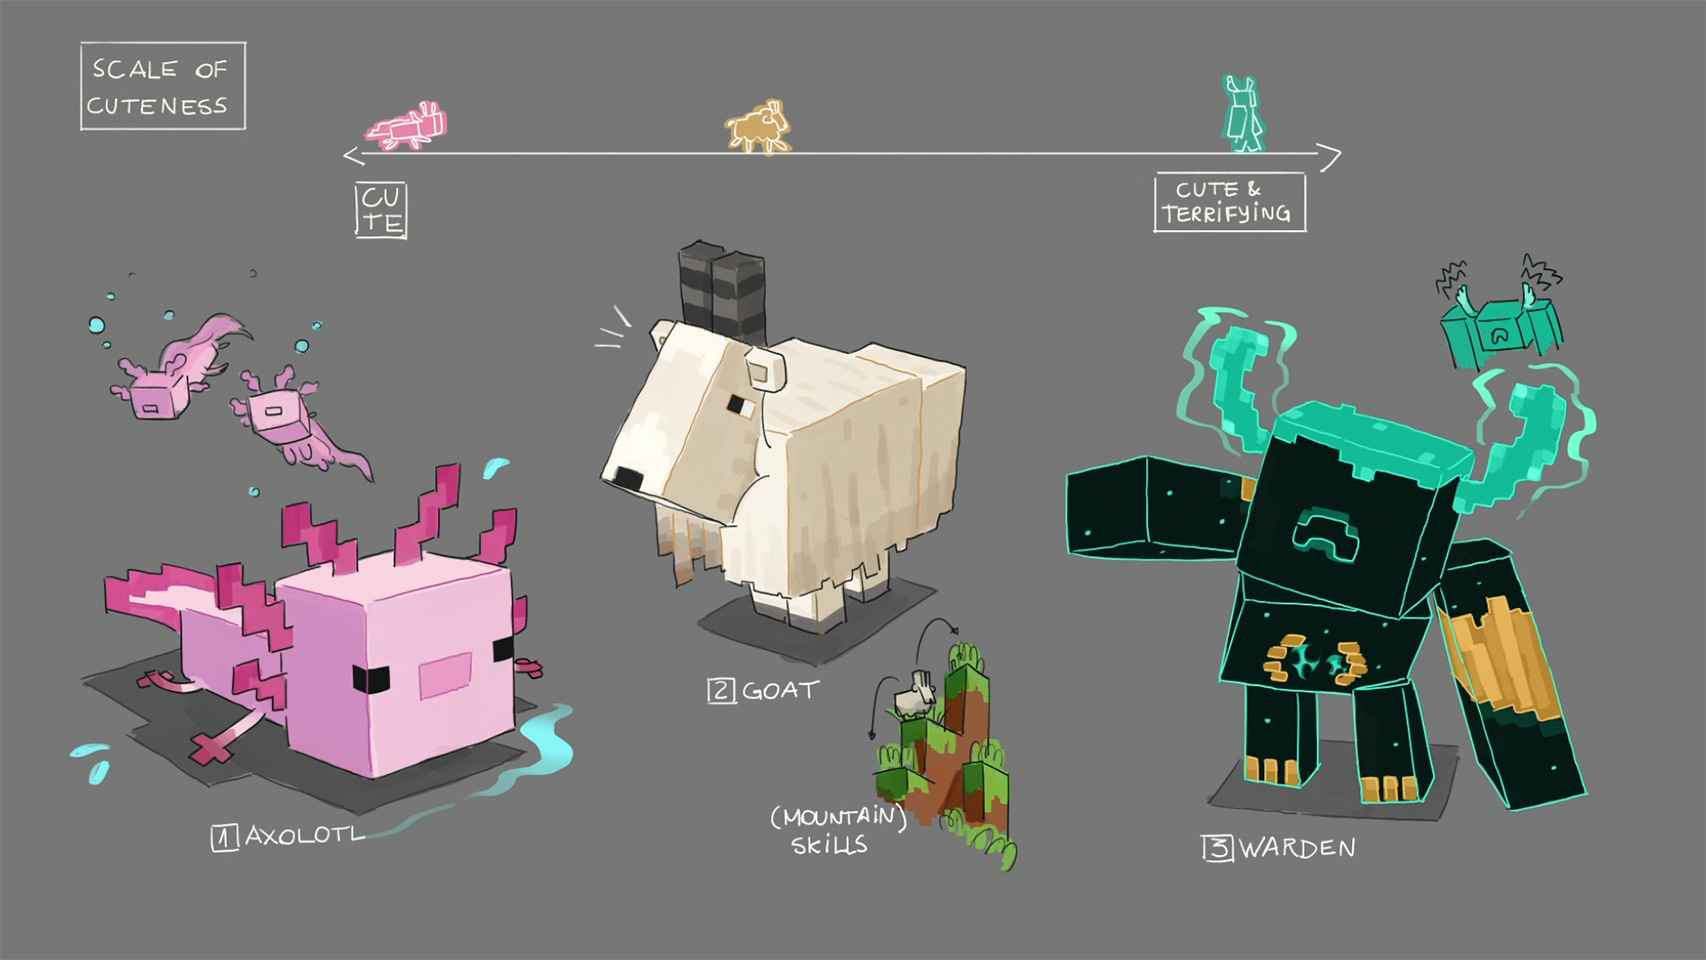 Arte previo al desarrollo de los nuevos mobs de 'Caves and Cliffs' de Minecraft